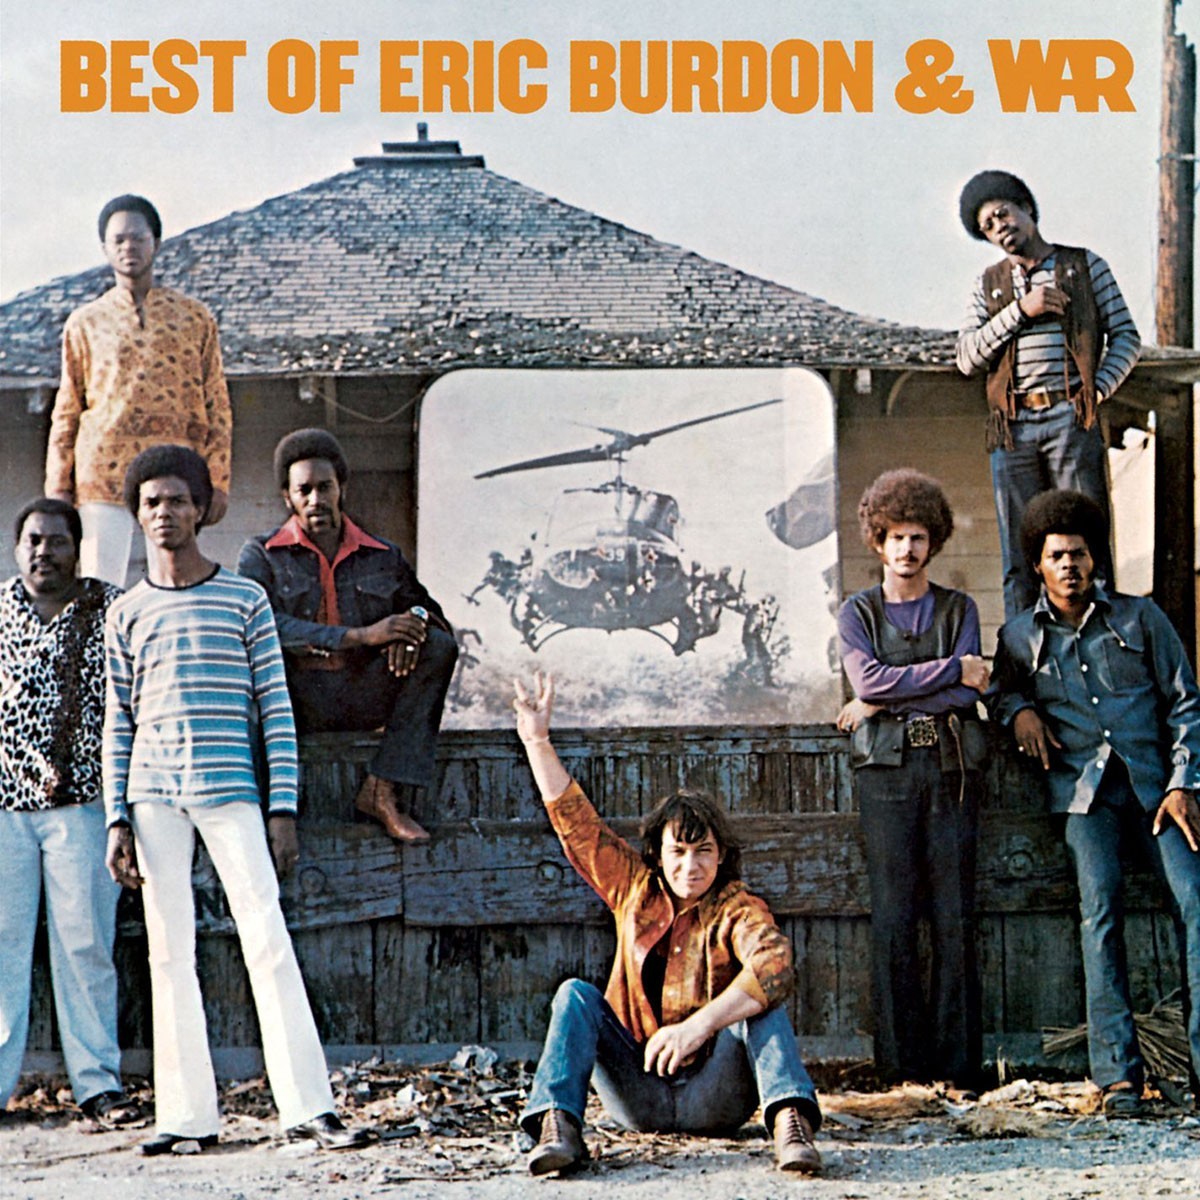 Burdon tomó una nueva dirección y en 1969 lanzó "Eric Burdon and War"